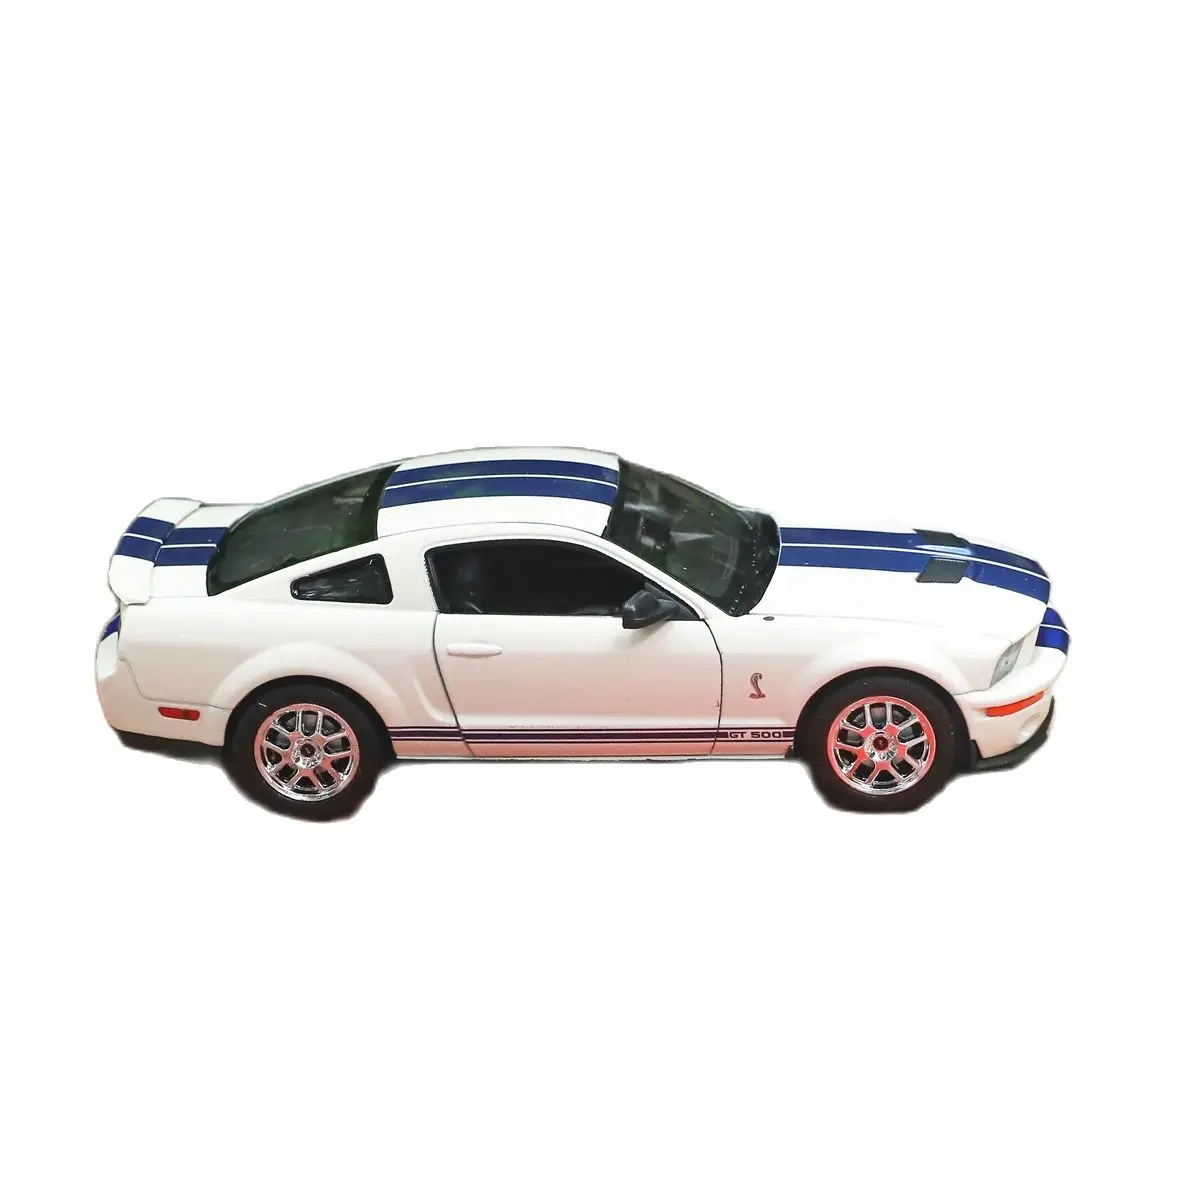 

Welly 1:24 2007 Shelby Cobra GT500 металлическая роскошная модель автомобиля под давлением, модель автомобиля, коллекция игрушек, подарок на день рождения...